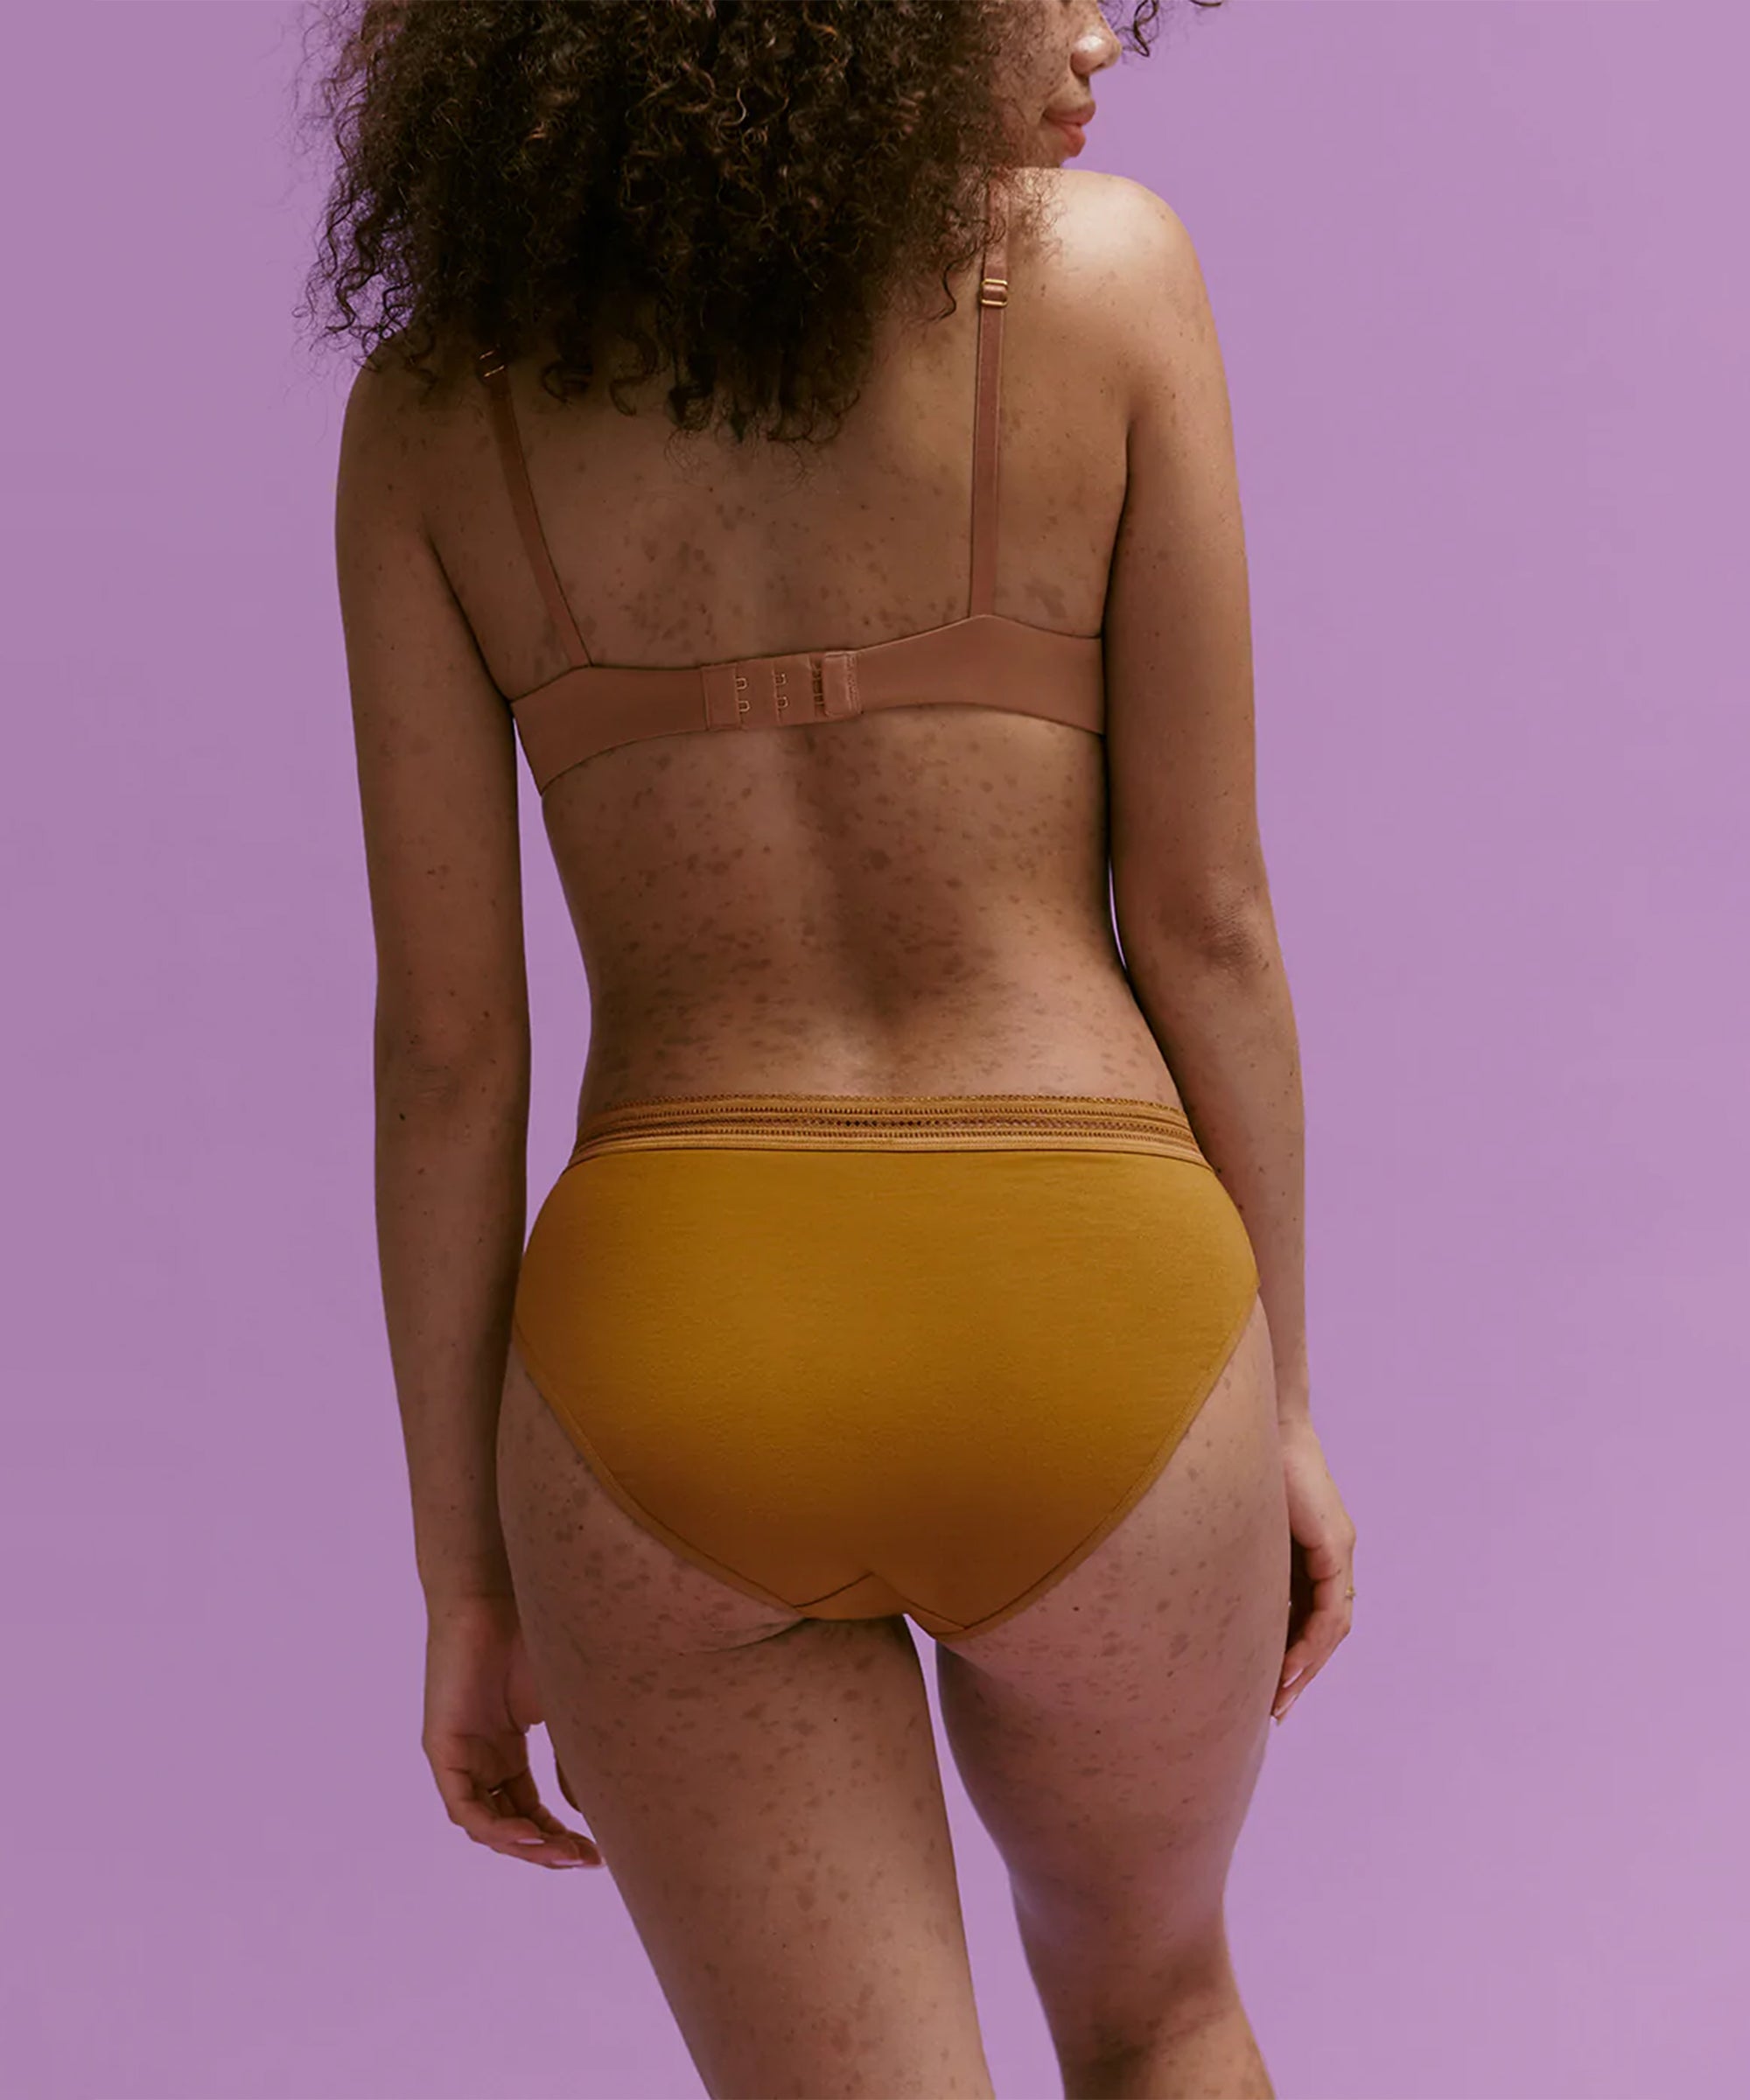 Hot Bbw On Nude Beach - The 30 Best Cotton Underwear for Women